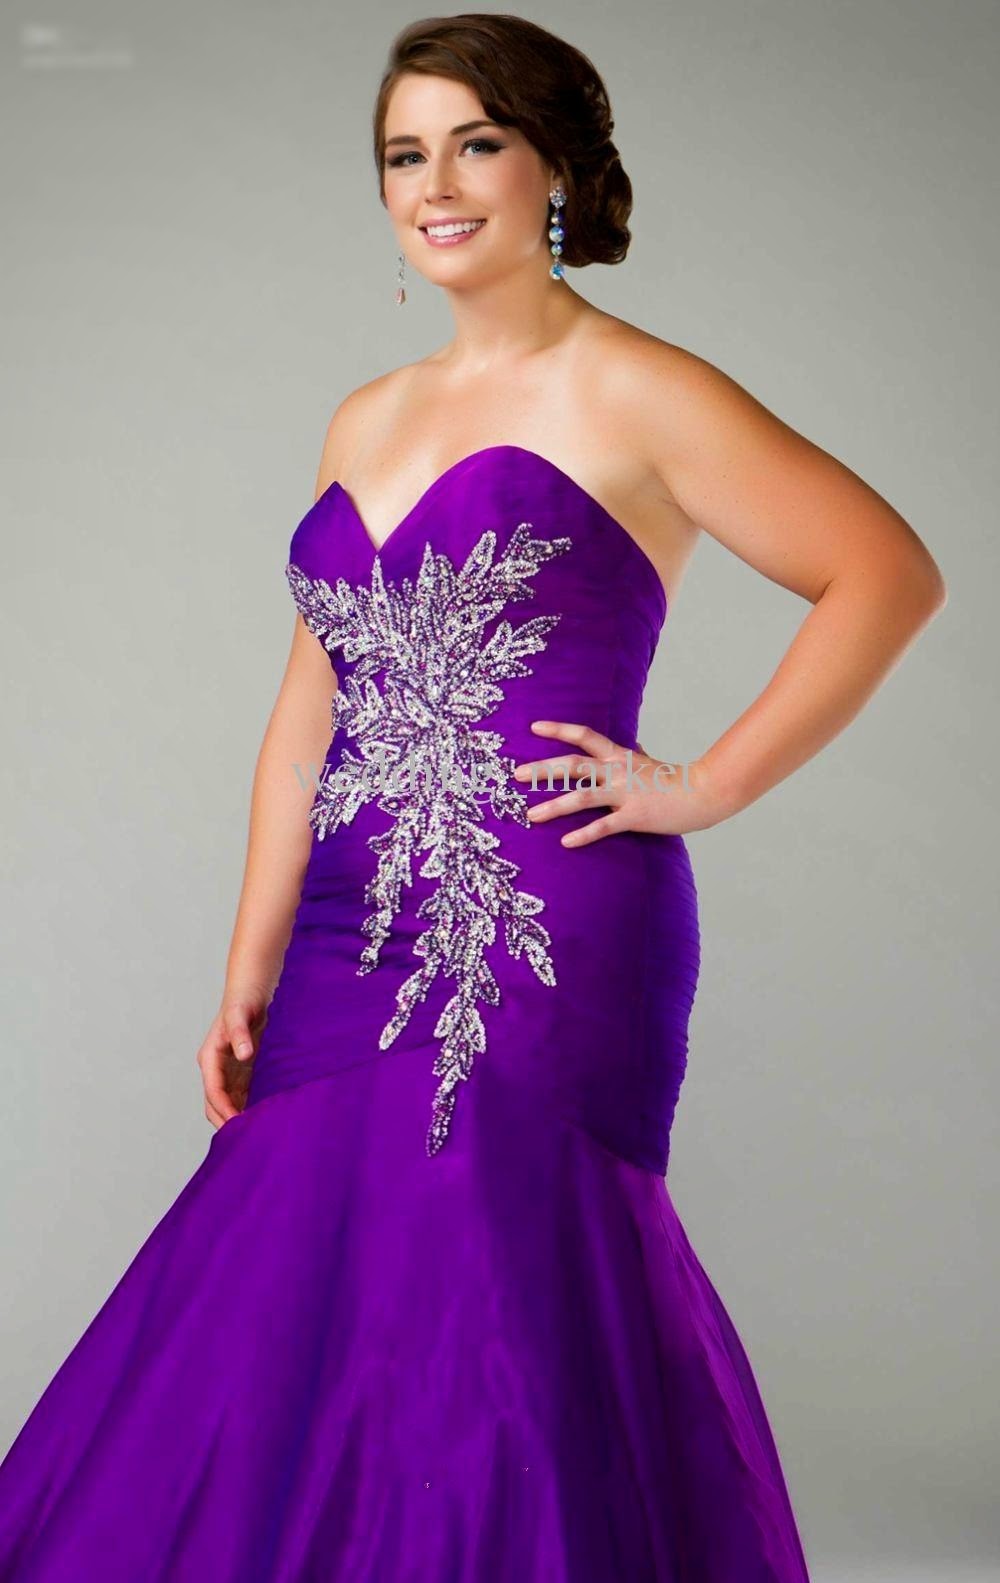 plus size wedding dress with purple color 03 plus size